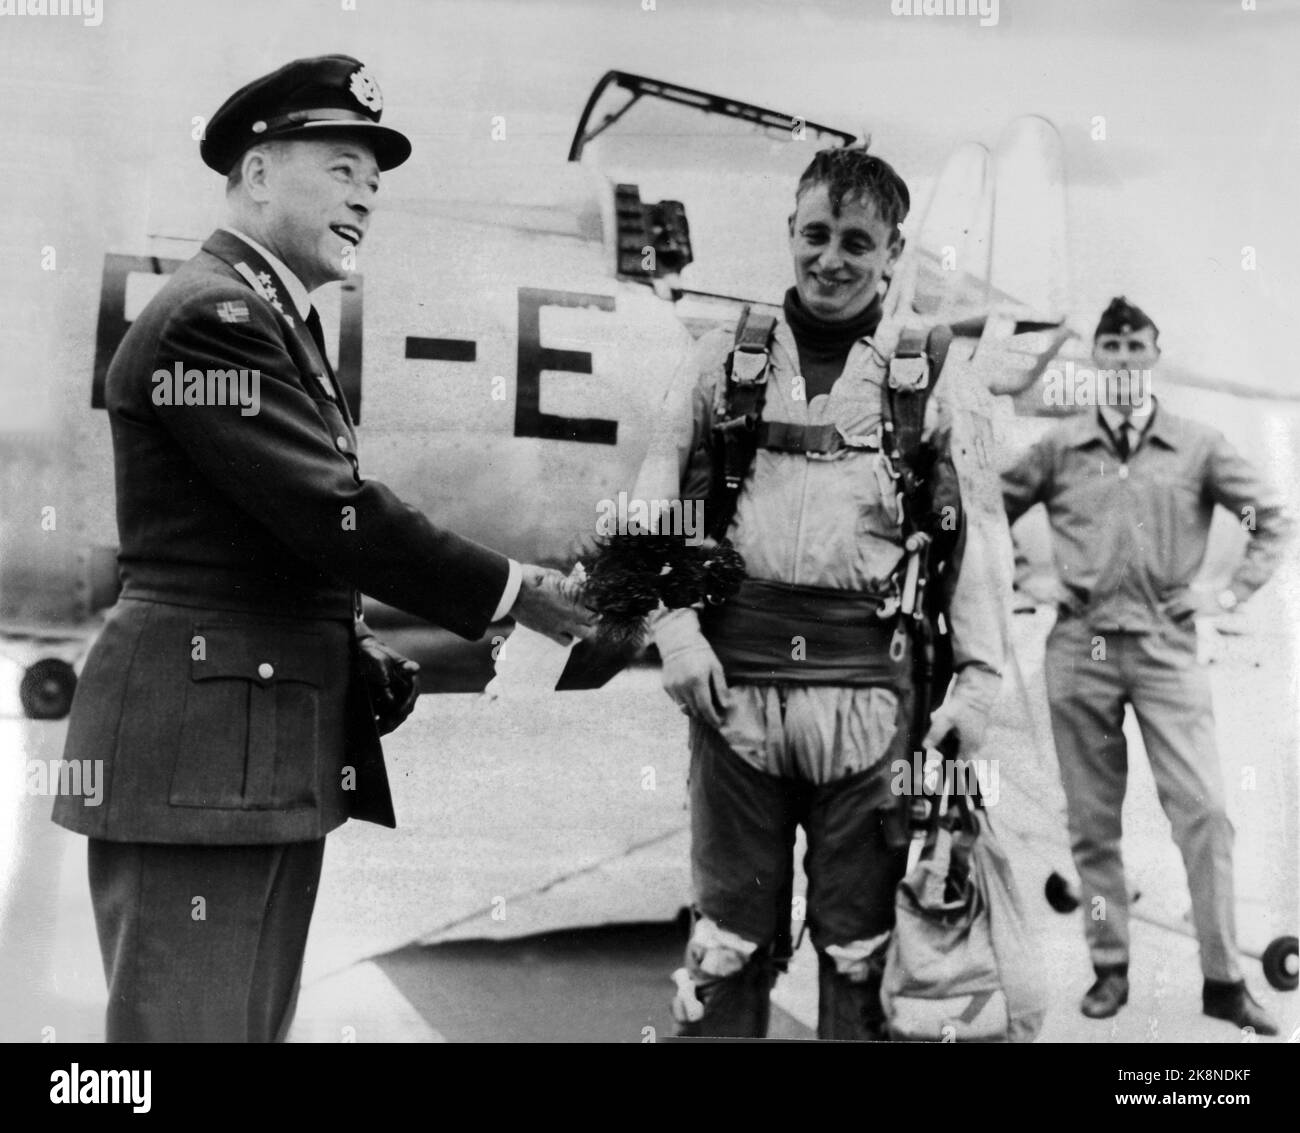 Bodø 19701004 primo pilota norvegese di caccia con 1000 ore di volo. Per la prima volta, un pilota norvegese da caccia ha raggiunto 1000 ore di volo. L'evento è stato segnato alla Stazione aerea di Bodø quando il pilota, il capitano Helge Moe sbarcò il suo Starfighter. Sono stati arrotolati tappeti rossi, i fanfares tromba la falciatura e una bottiglia di champagne è stato spruzzato, dopo di che il direttore della stazione, il colonnello Bjørge Hanssen, ha tenuto un discorso e ha consegnato fiori al capitano Moe. Foto: Archivio NTB, NTB Foto Stock